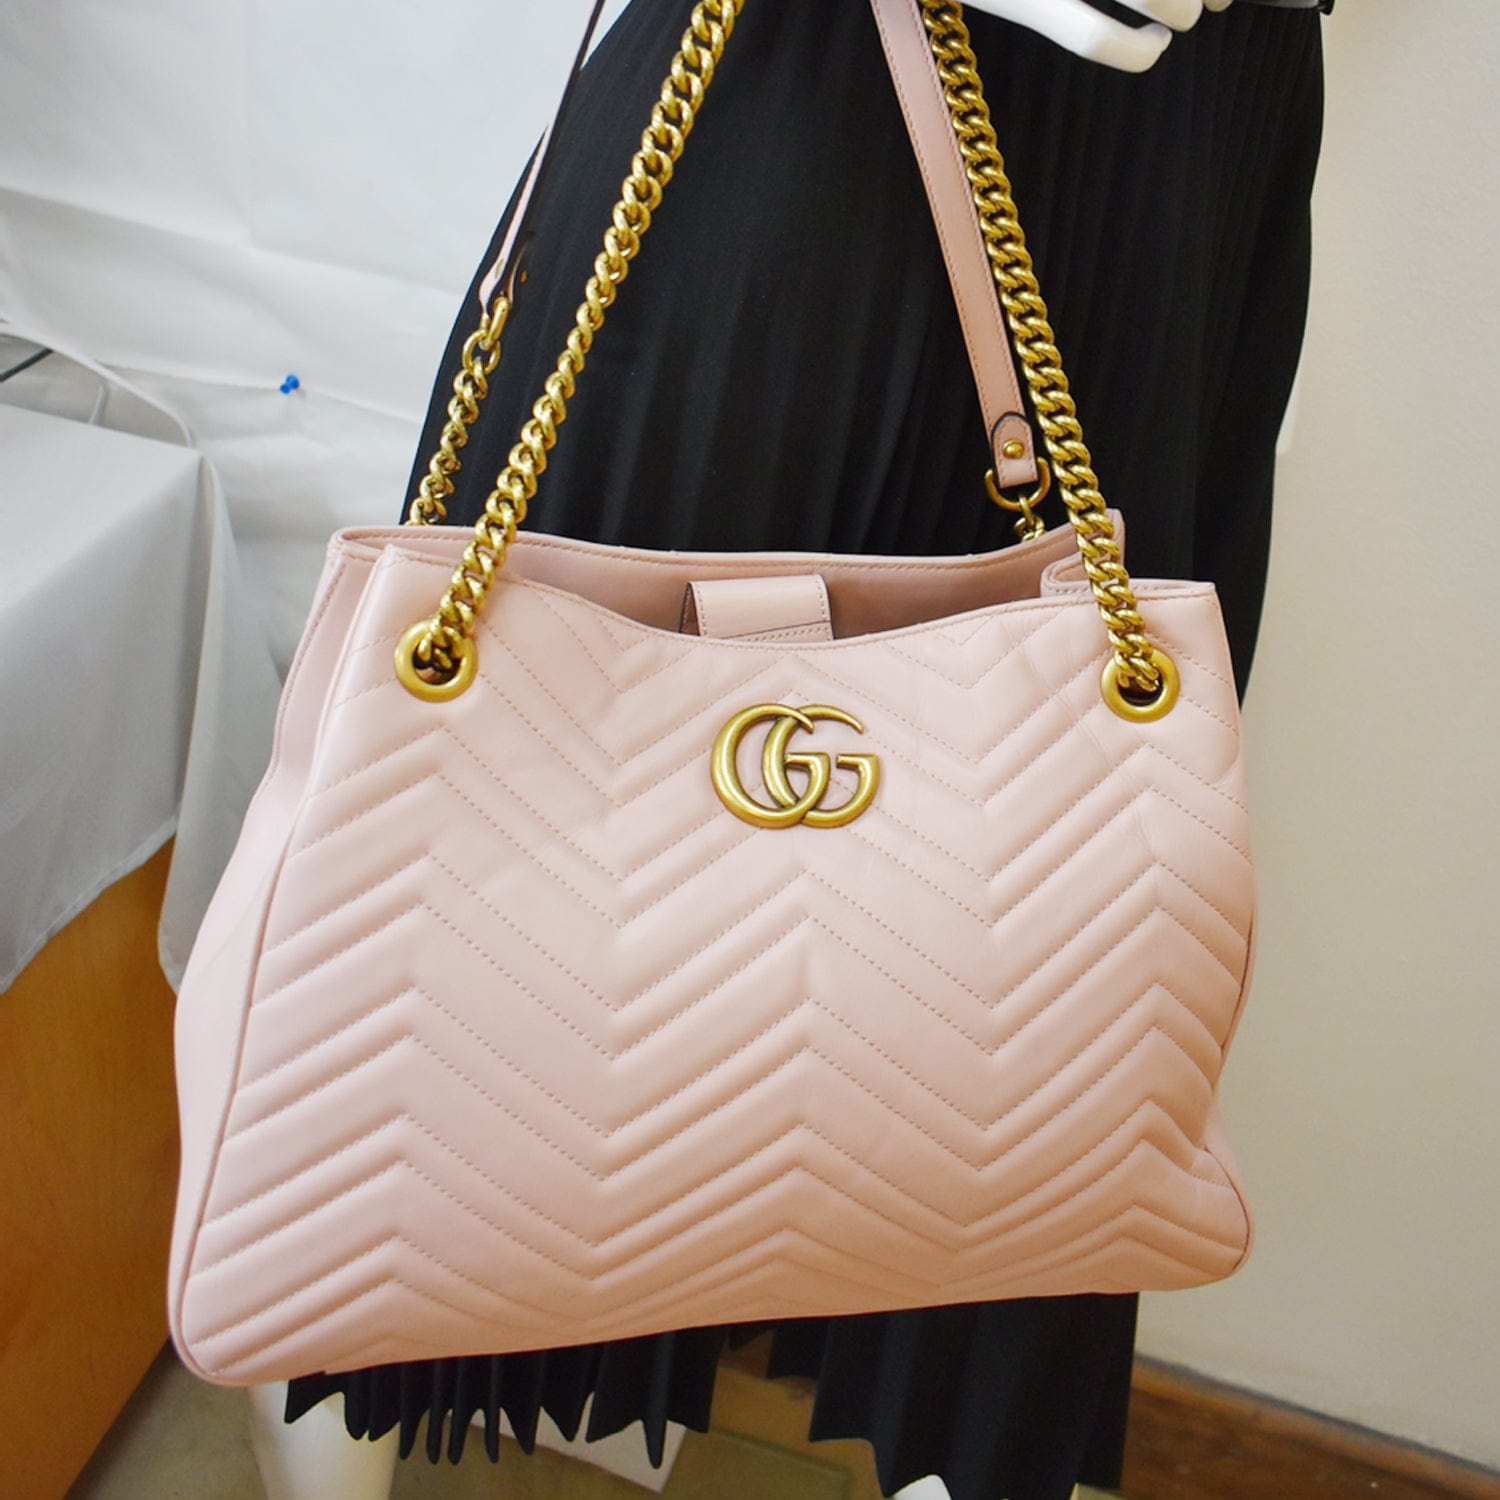 Gucci Large GG Marmont Matelasse Shoulder Bag